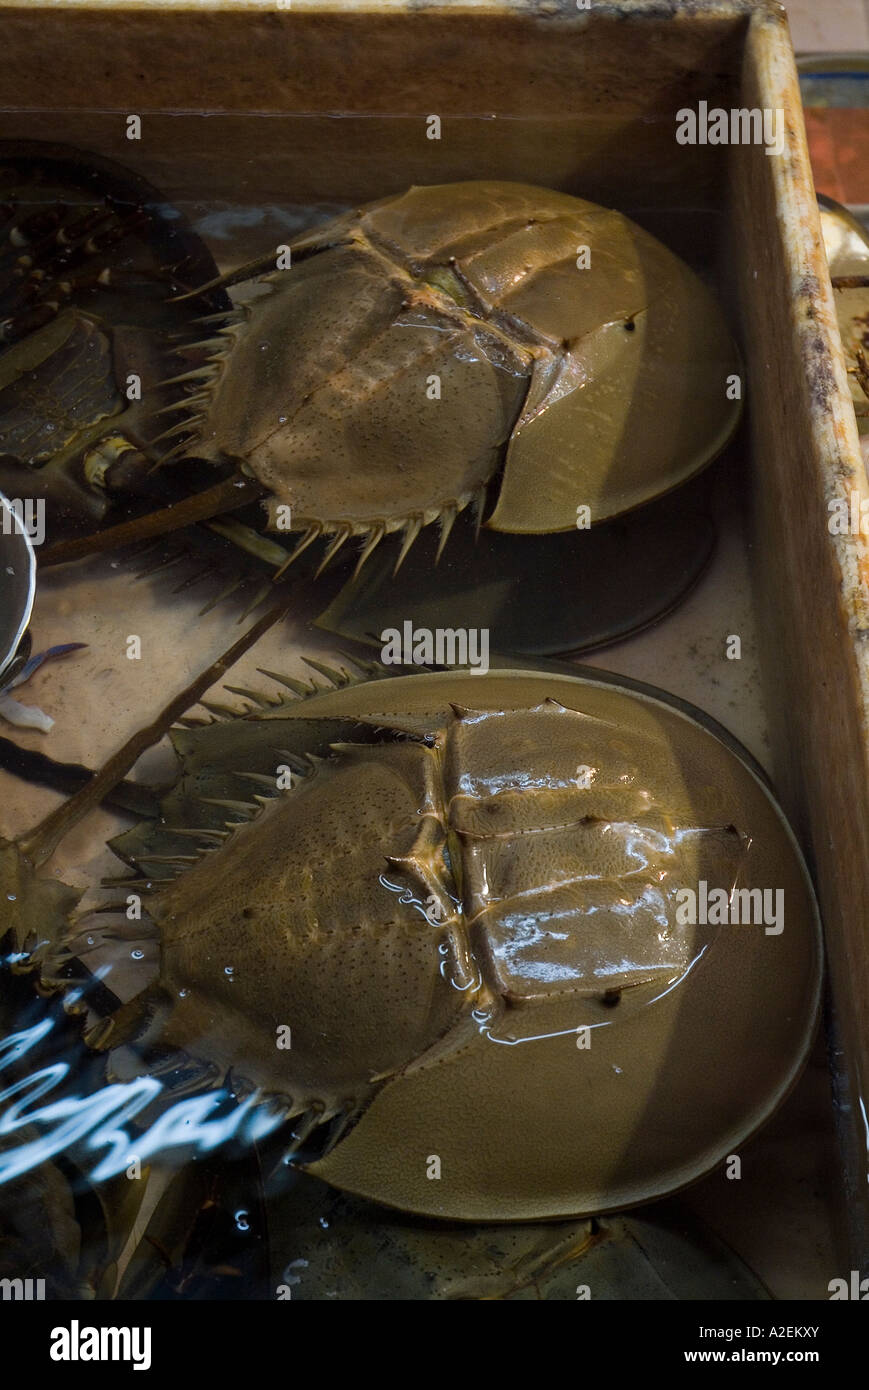 dh Mangrove horseshoe crabs NORTH POINT HONG KONG fresh fish market crab live asia Stock Photo